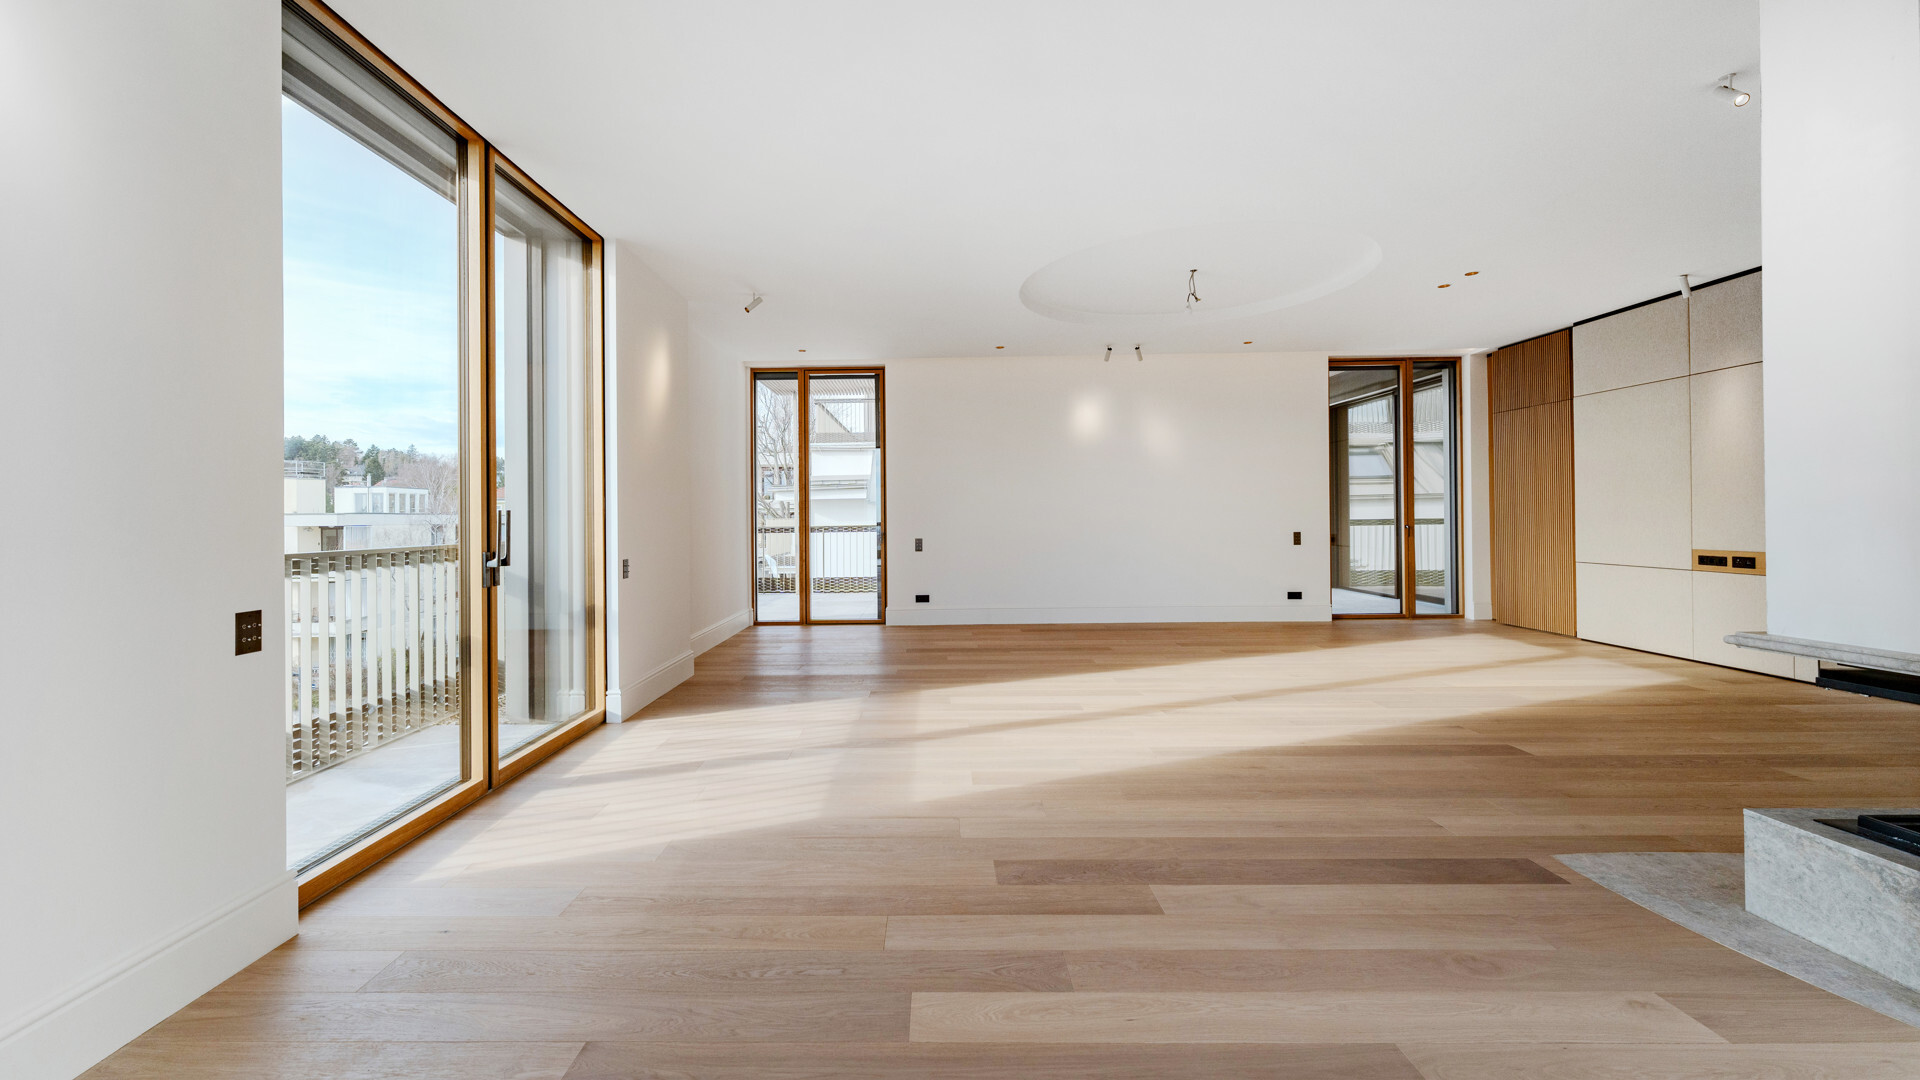 260 m² Penthouse-Maisonette im Dachgeschoß mit 4 Terrassen in Grinzinger Toplage - zu kaufen in 1190 Wien